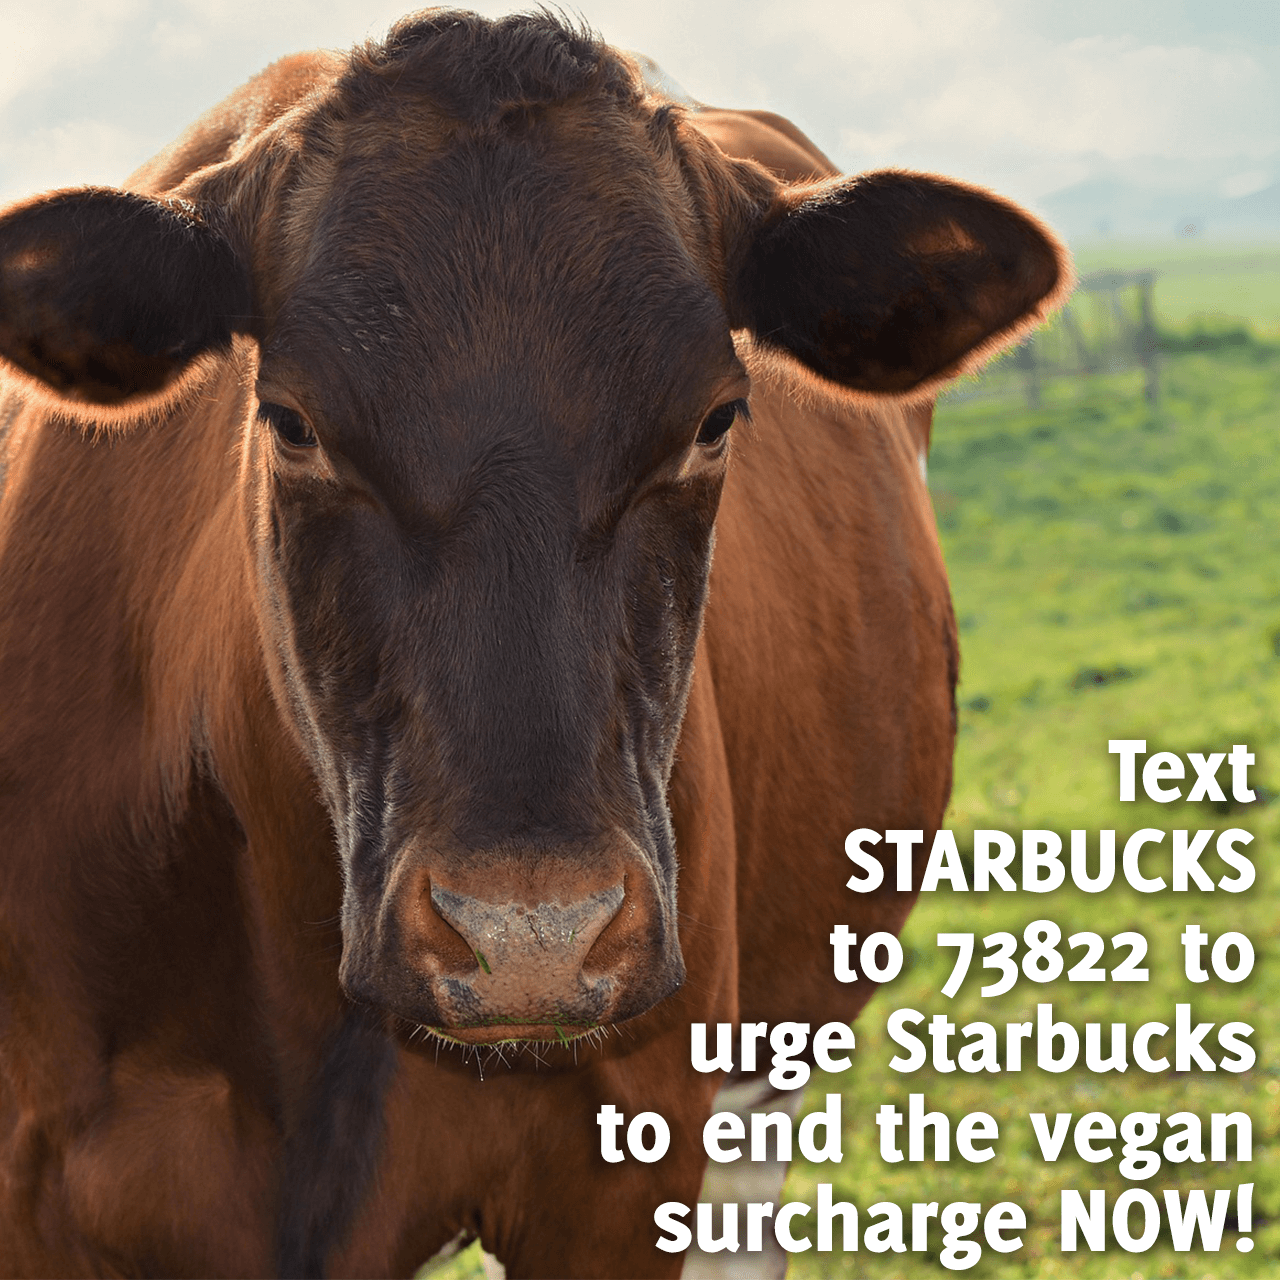 Urge Starbucks to Help Cows During the Coronavirus Crisis